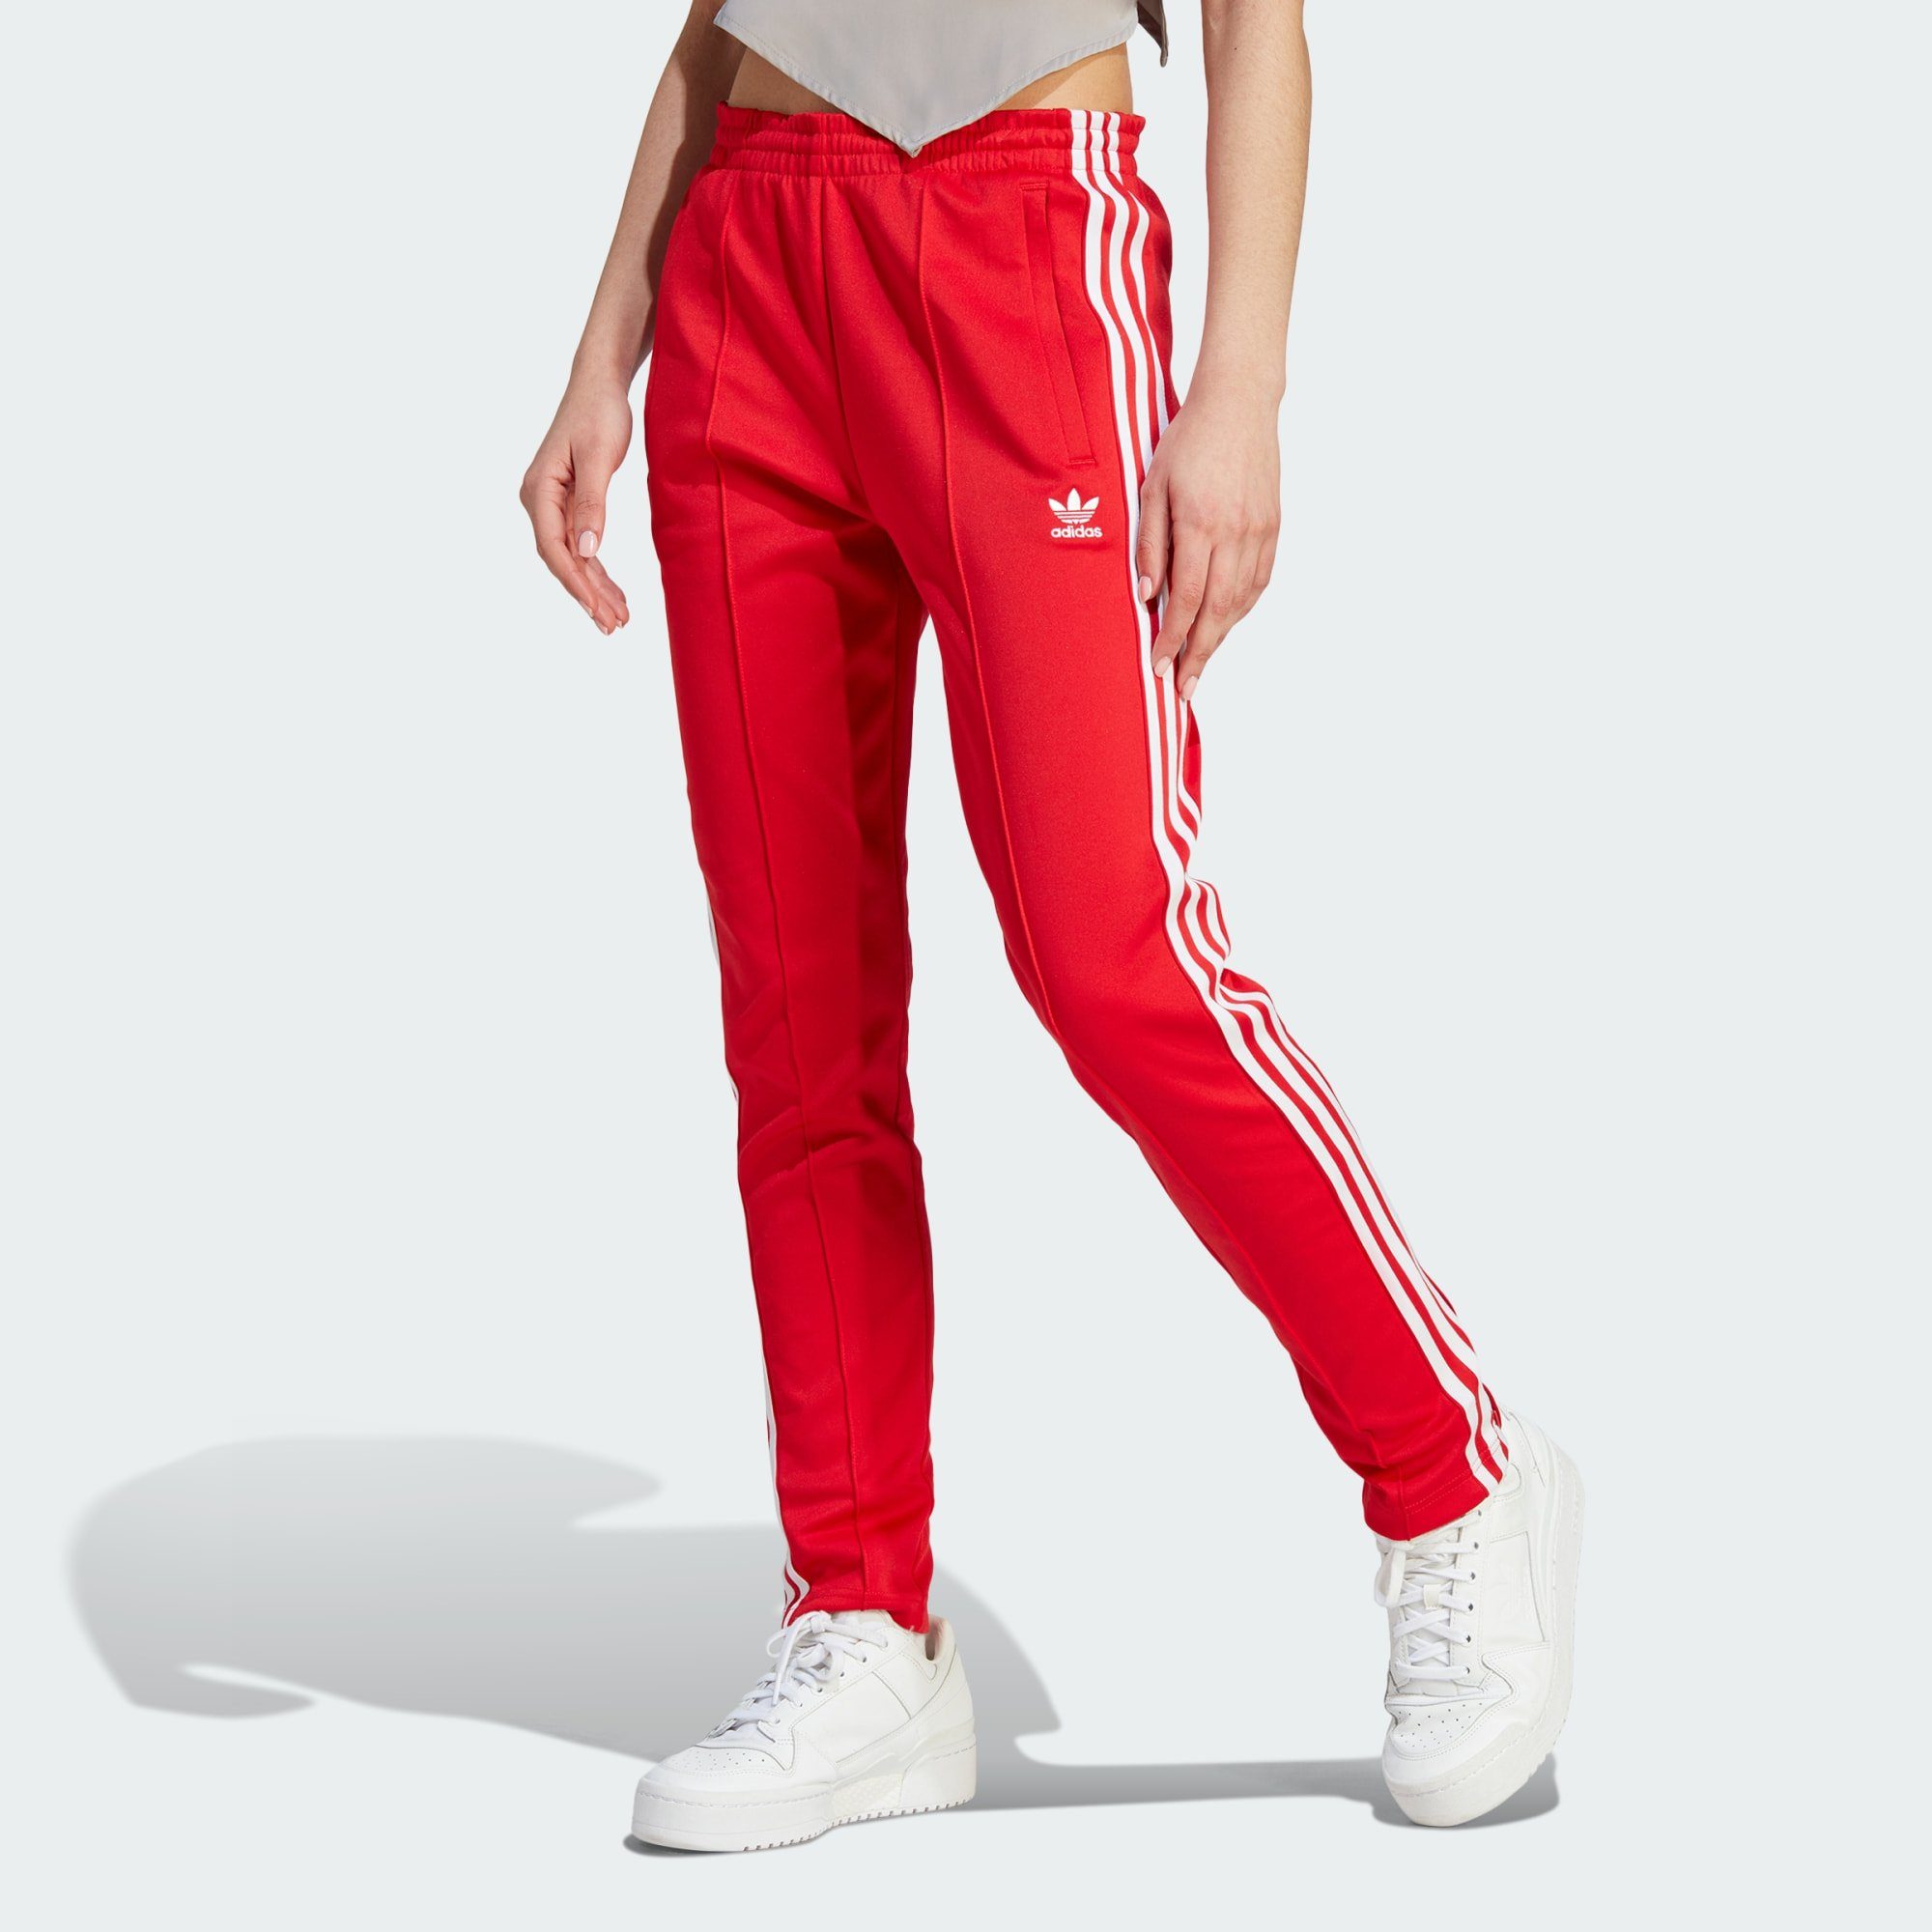 binnenplaats Weinig Vochtigheid Rote adidas Damen Jogginghosen online kaufen | OTTO